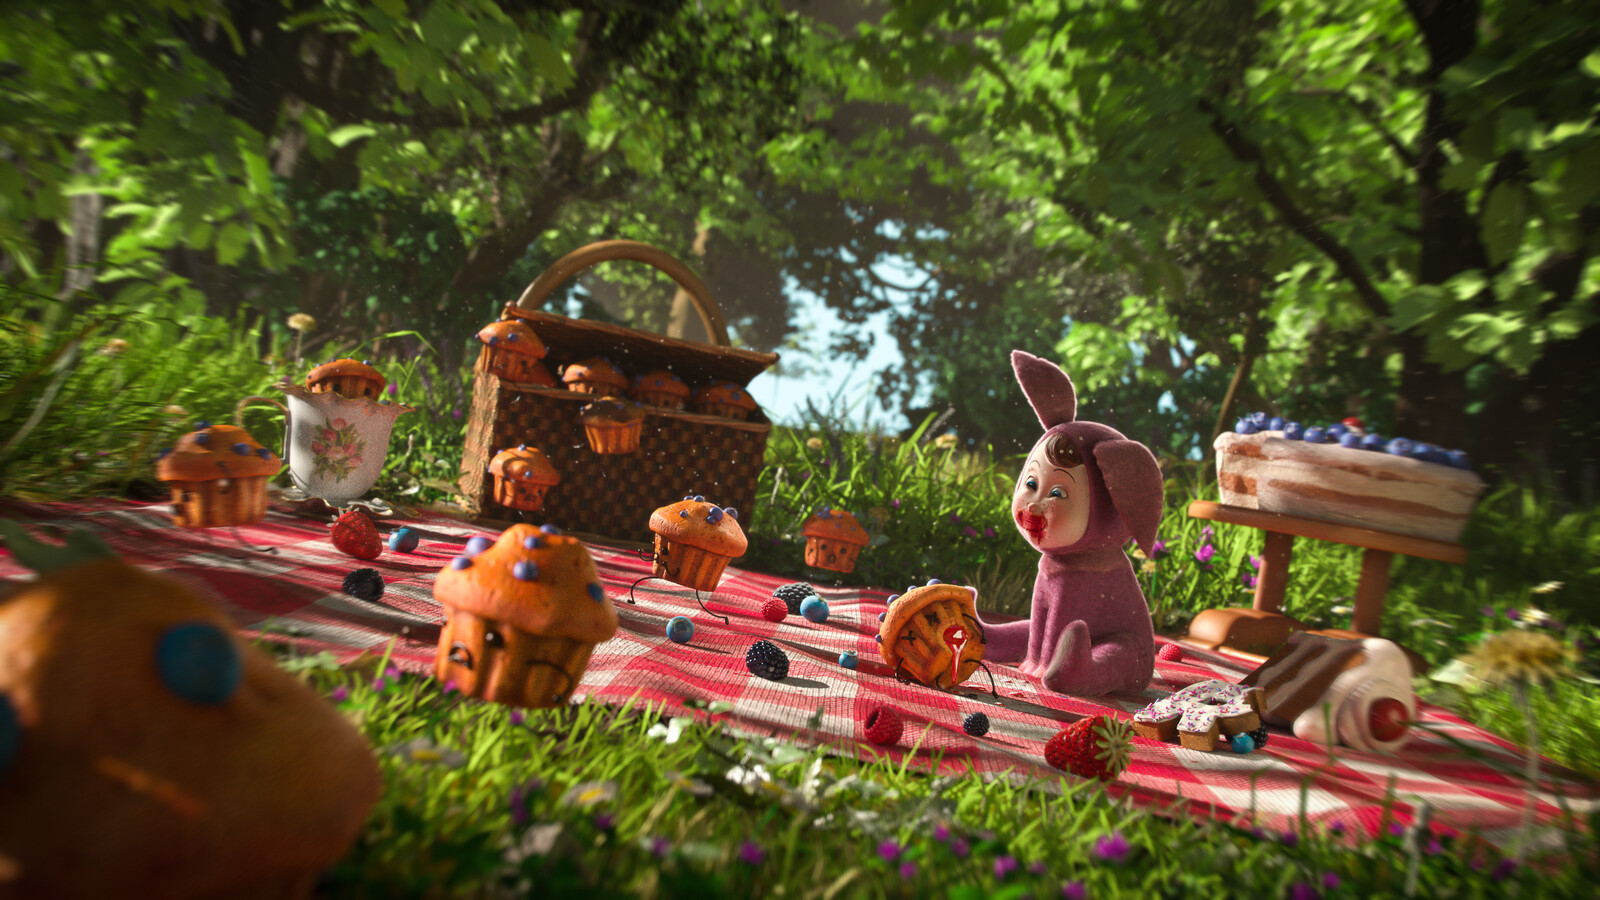 Sneaking Muffins - Pixar's RenderMan "Lost Things" Art Challenge